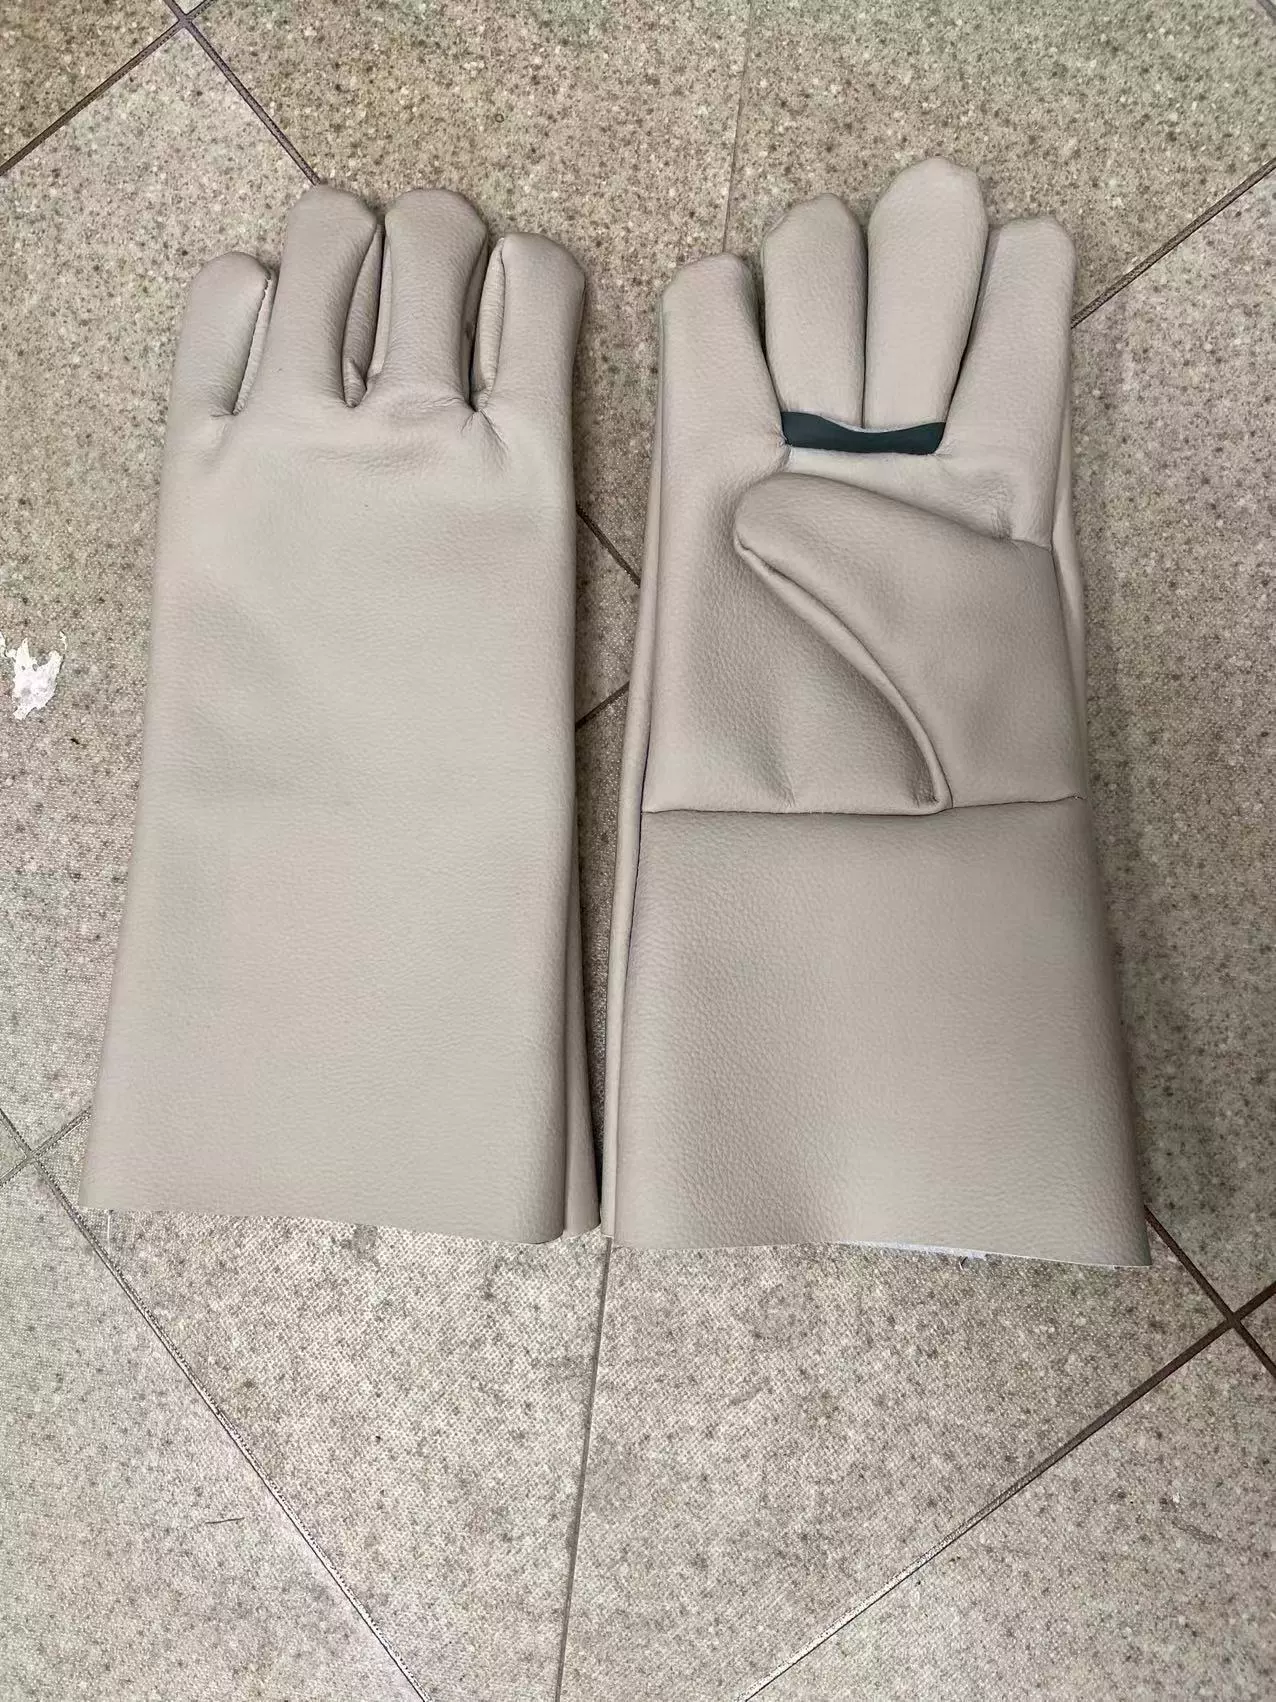 Áo giáp trắng hai lớp găng tay vải 24 dòng lót đầy đủ bảo hiểm lao động vật tư nhà sản xuất chống mài mòn làm việc máy móc bảo vệ thợ hàn dày bao tay chịu nhiệt găng tay hàn 